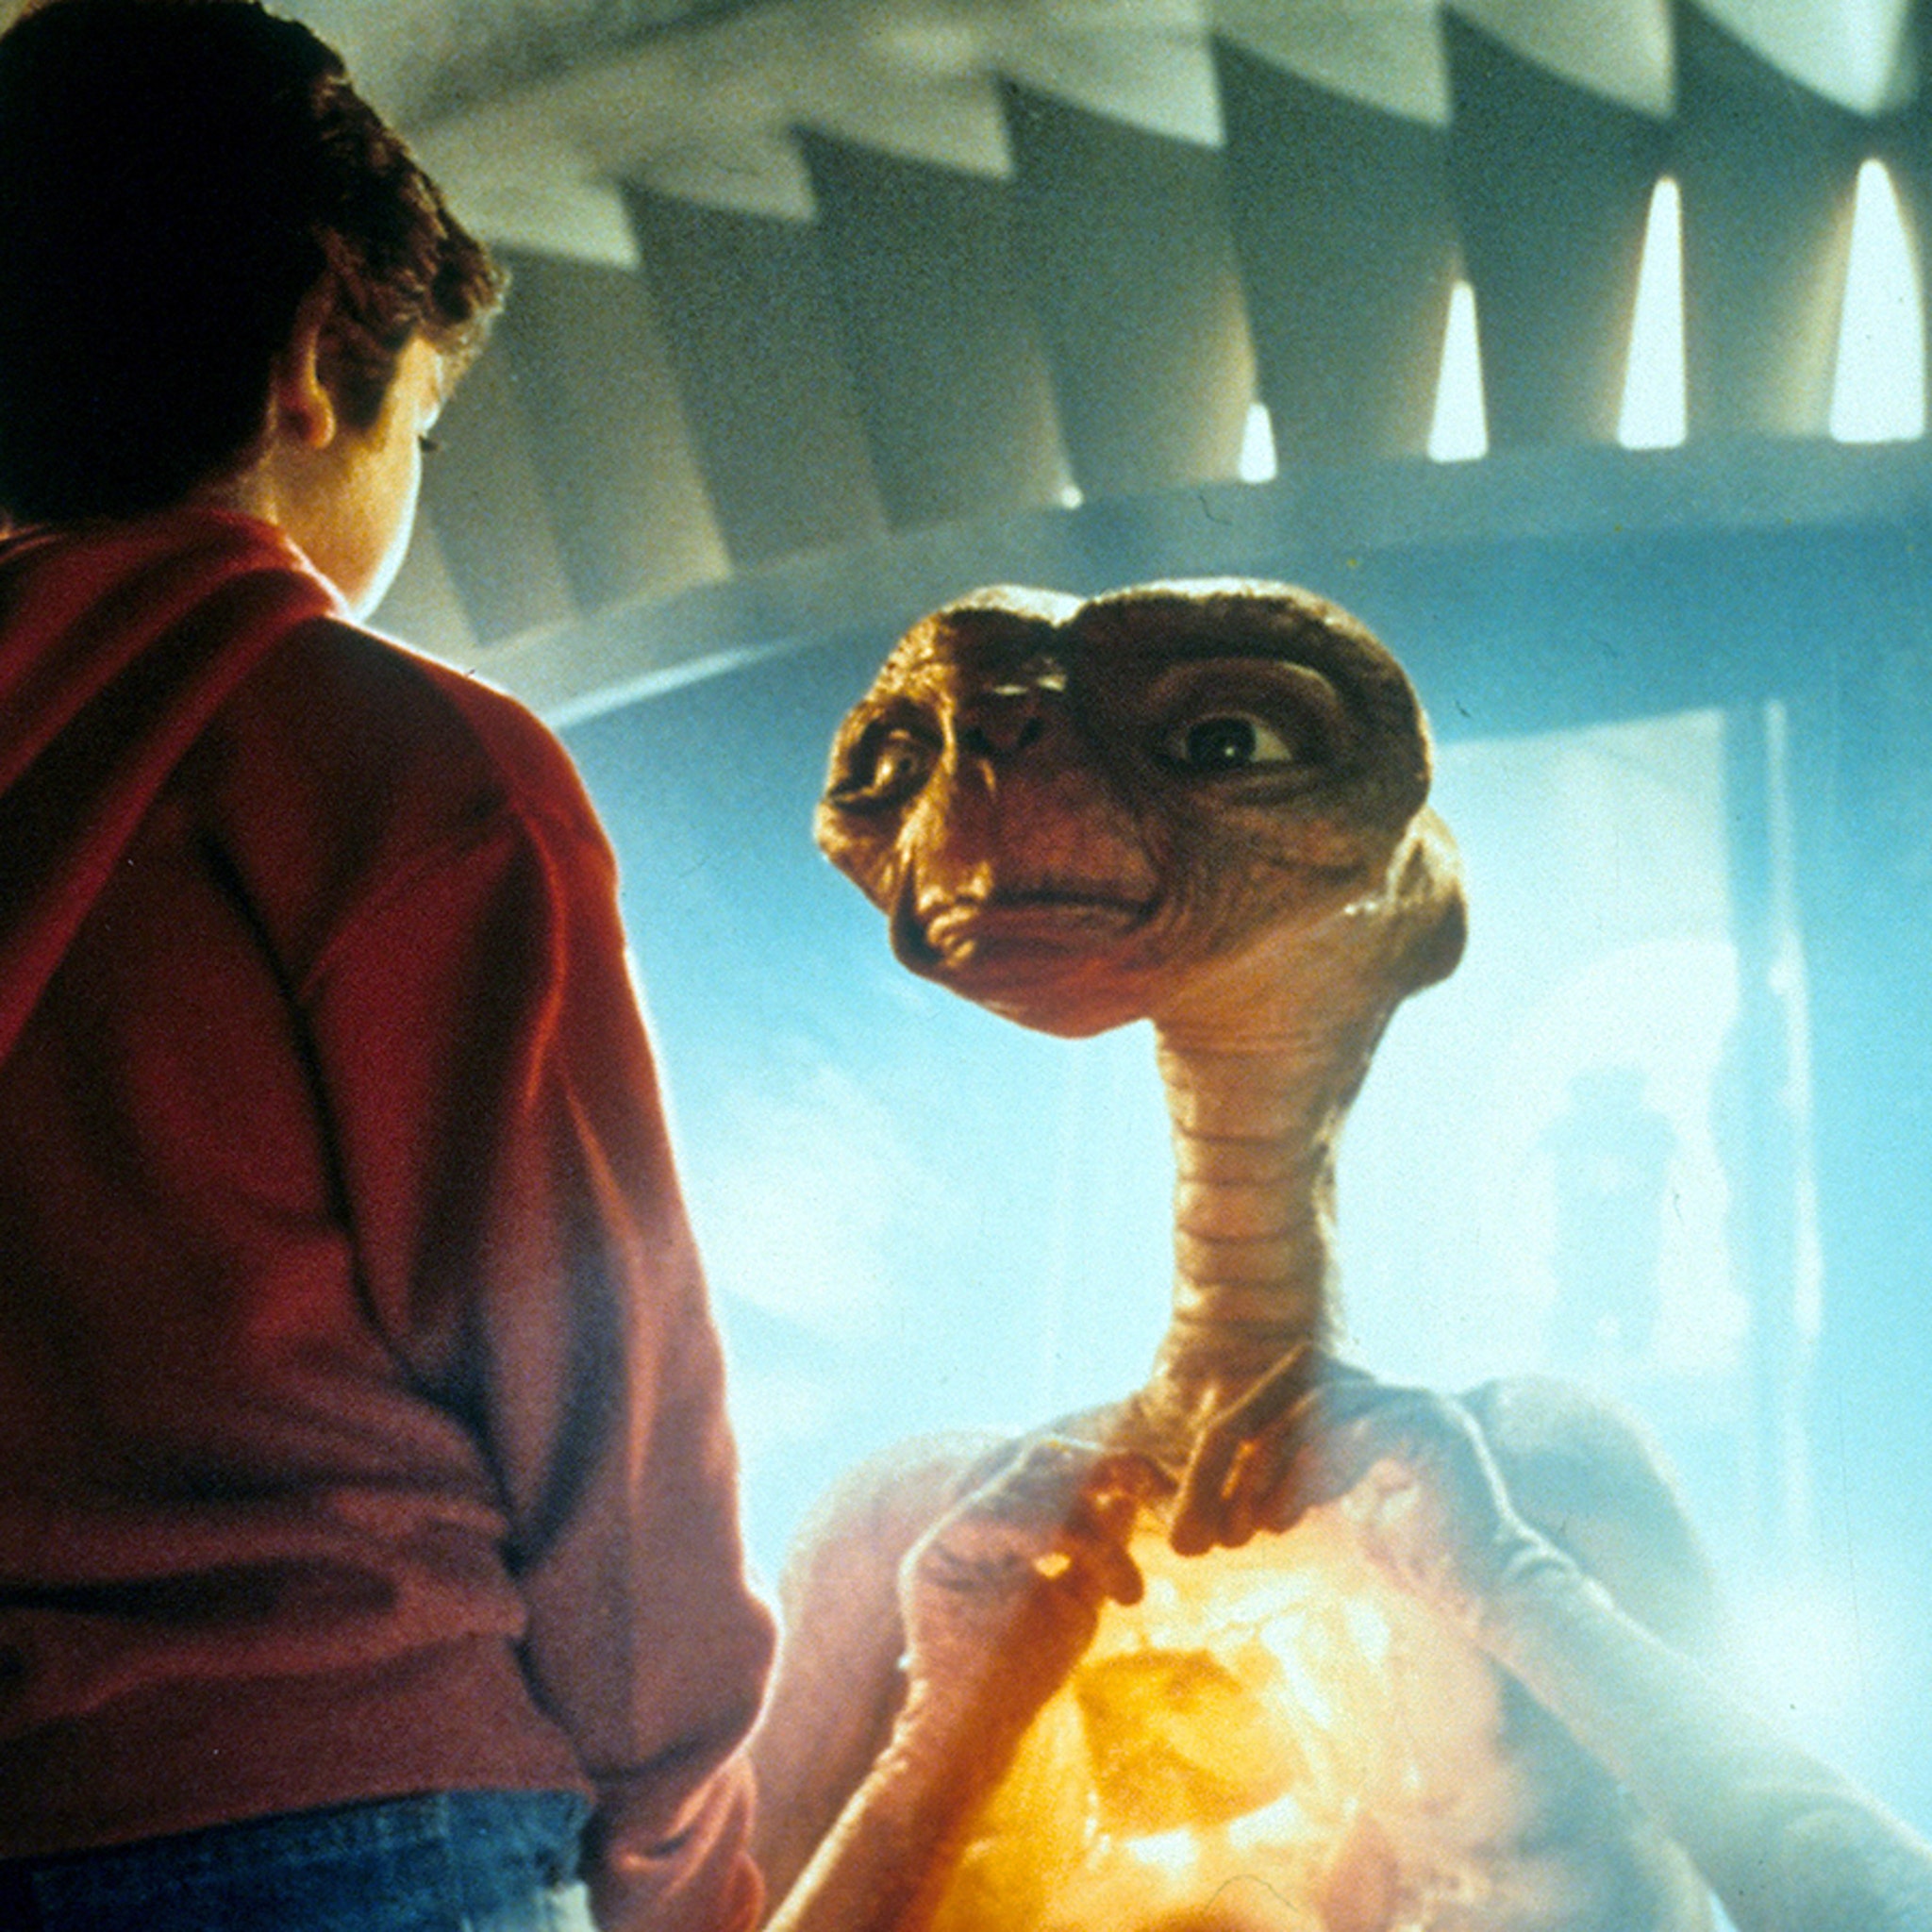 E.T. Original Mechatronic Alien Model Sells for $2.5M in Auction